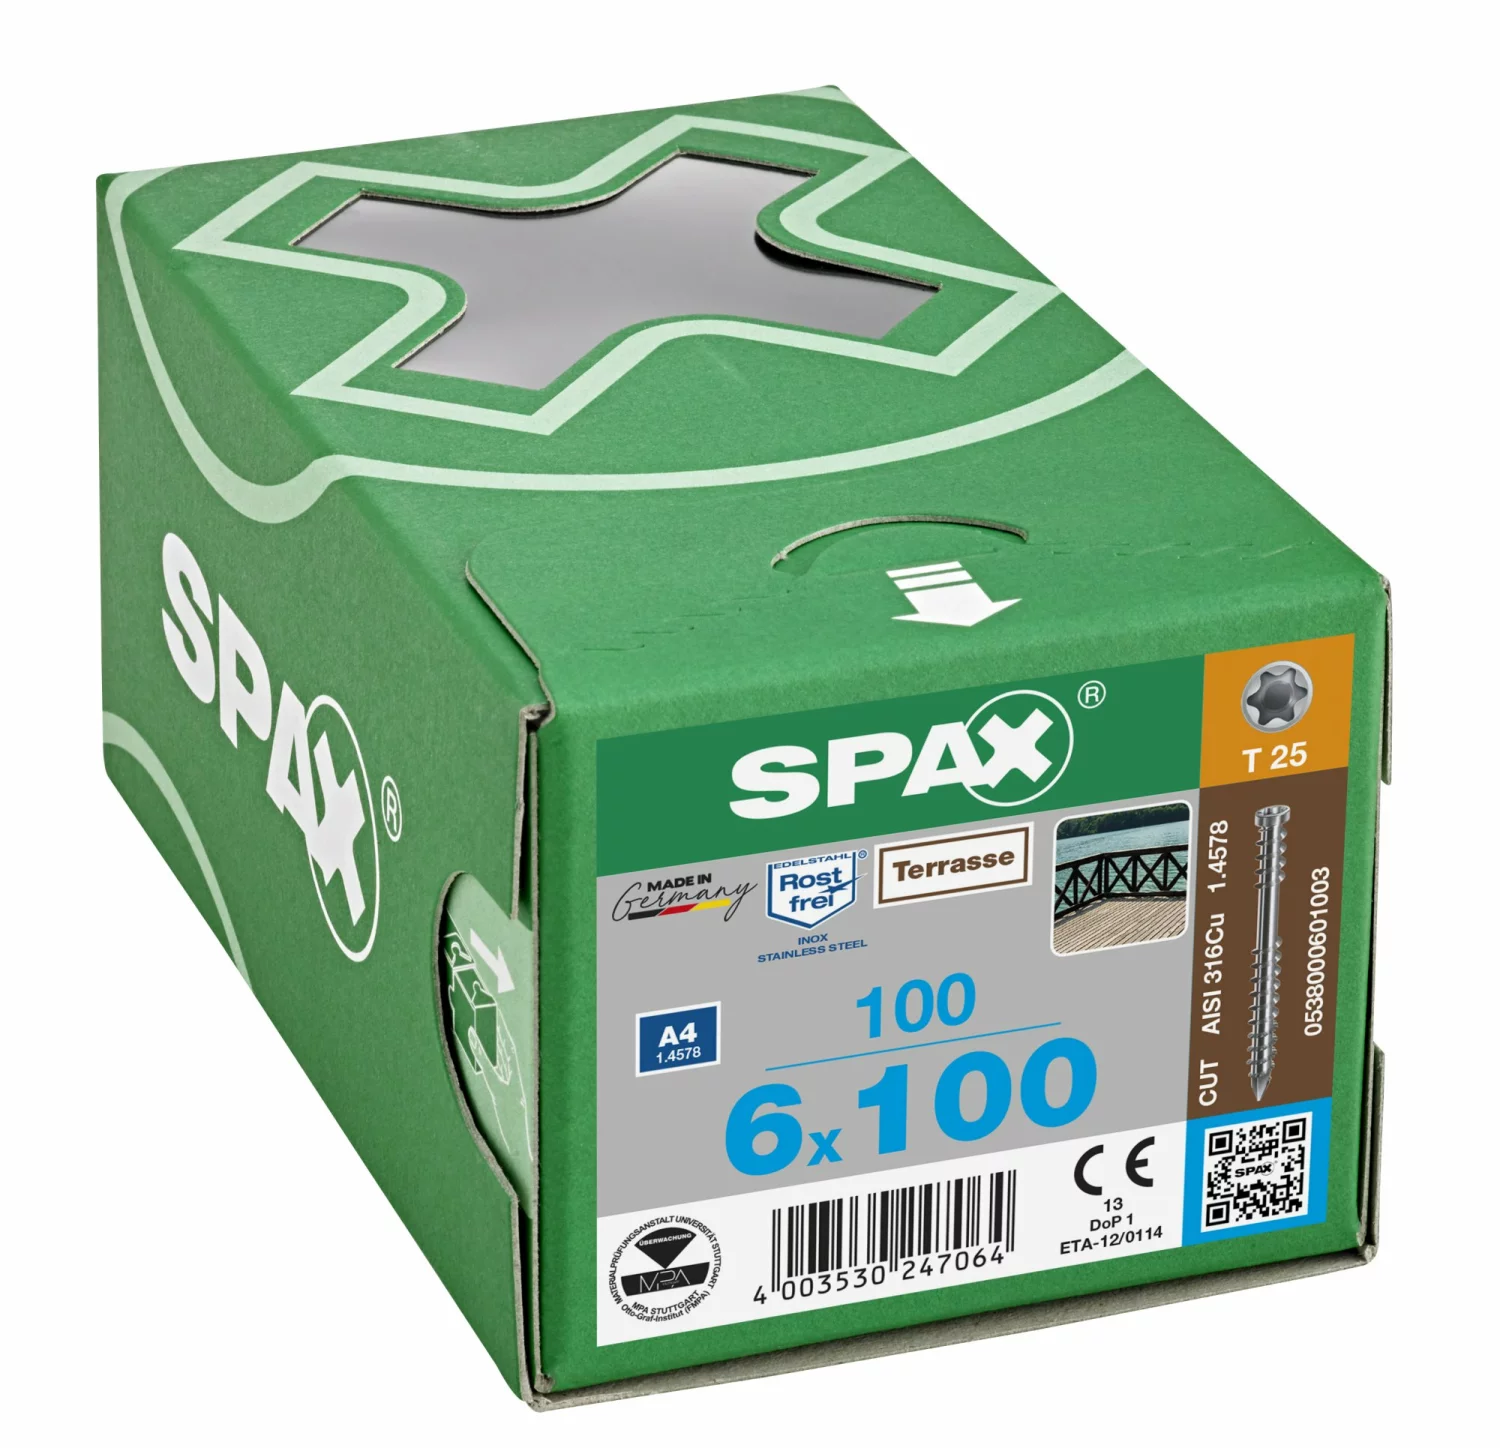 SPAX 538000601003 Terrasschroef, Cilinderkop, 6 x 100, Fixeerschroefdraad, T-STAR plus T25 - blank - 100 stuks-image